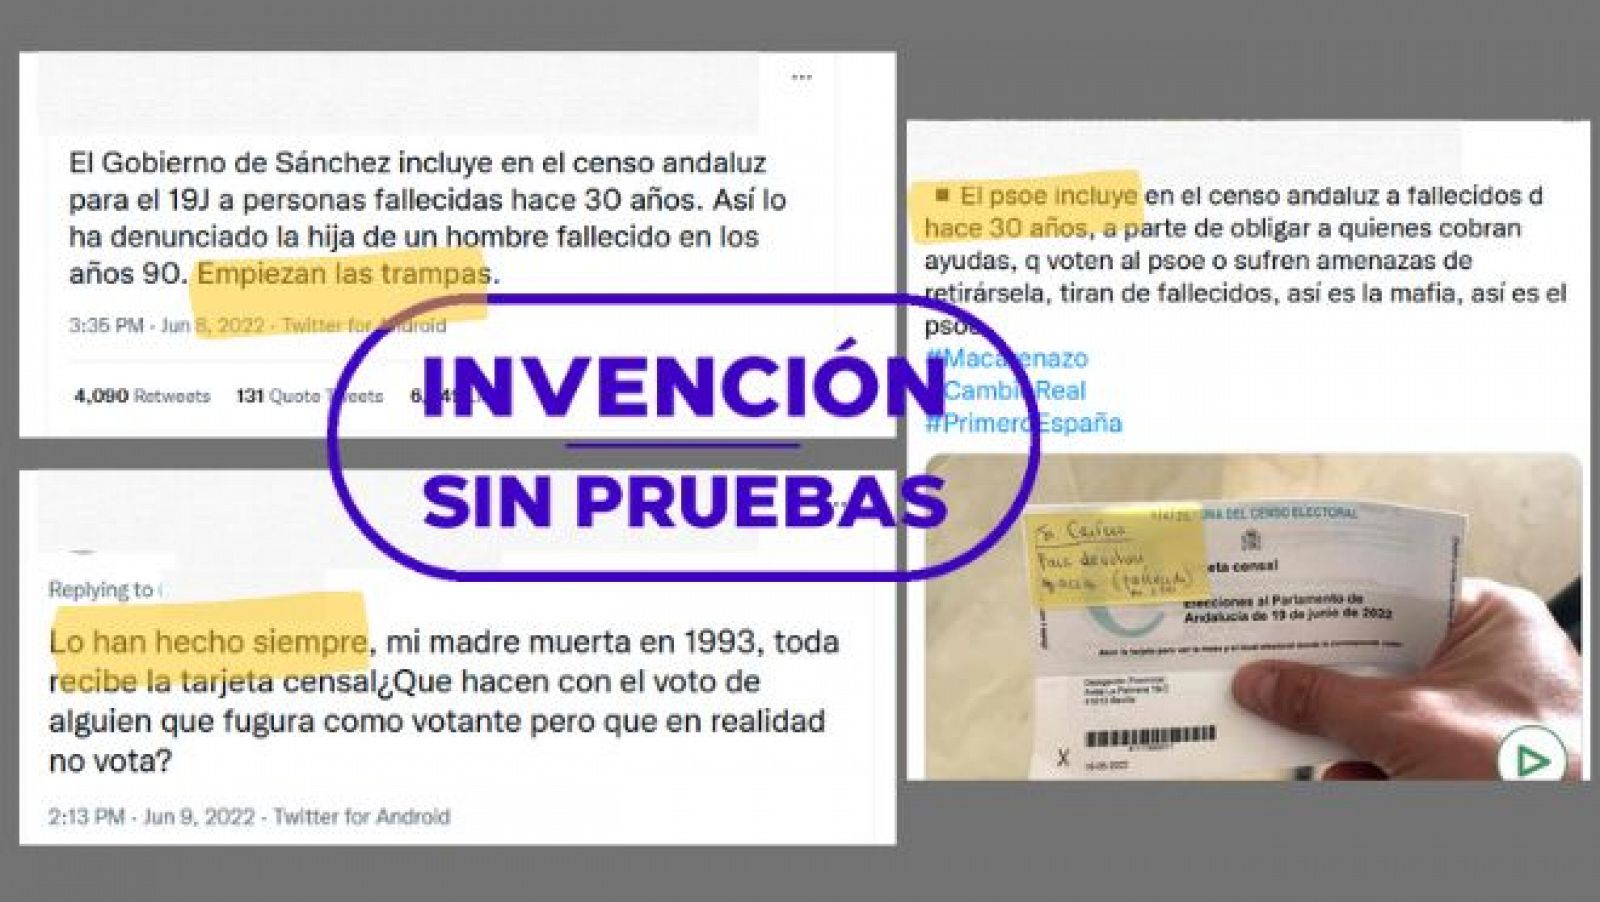 Mensajes que conectan tarjetas censales de fallecidos con la idea de fraude electoral.